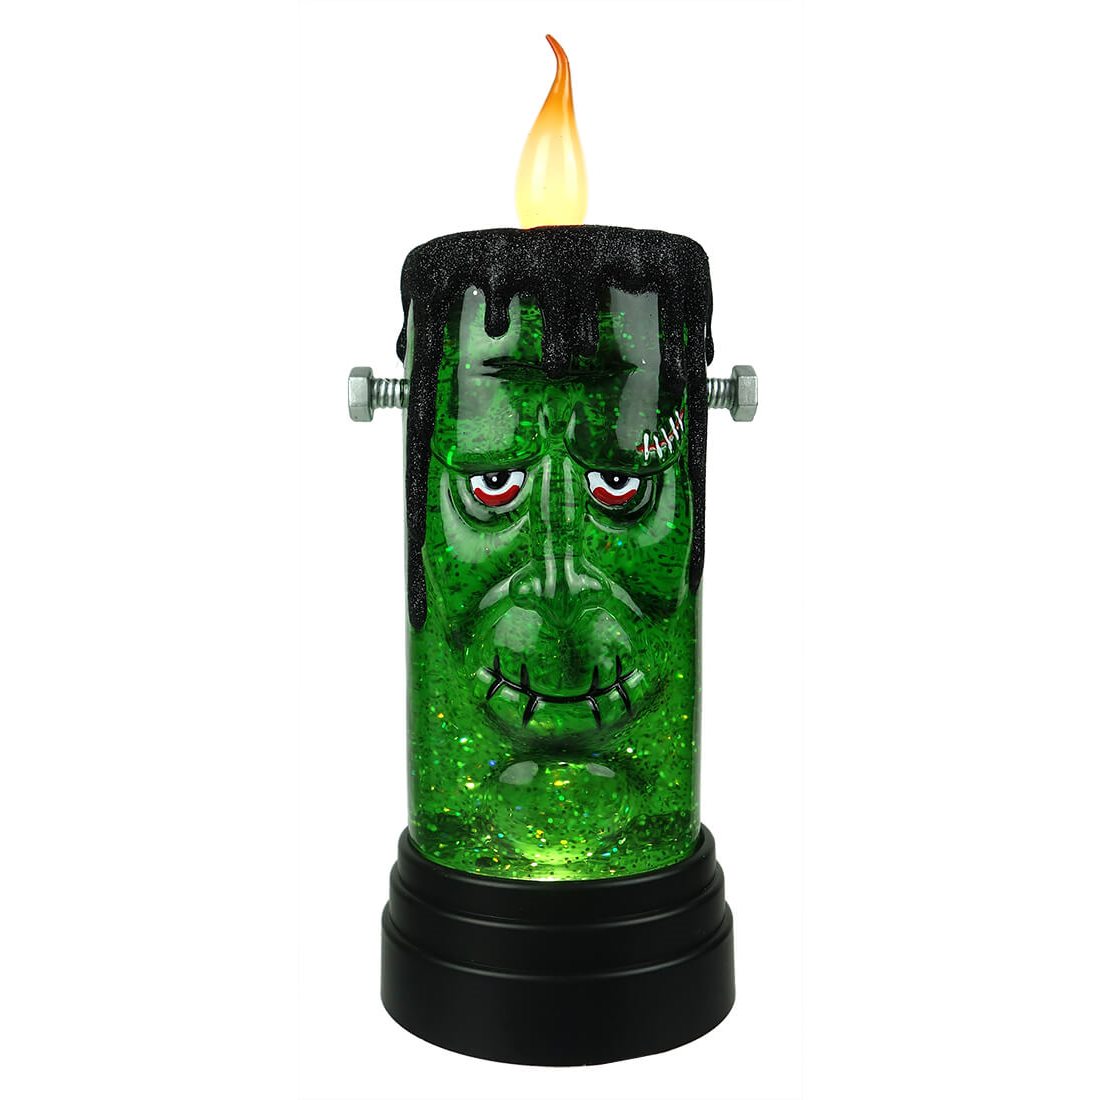 Frankenstein Candle Light